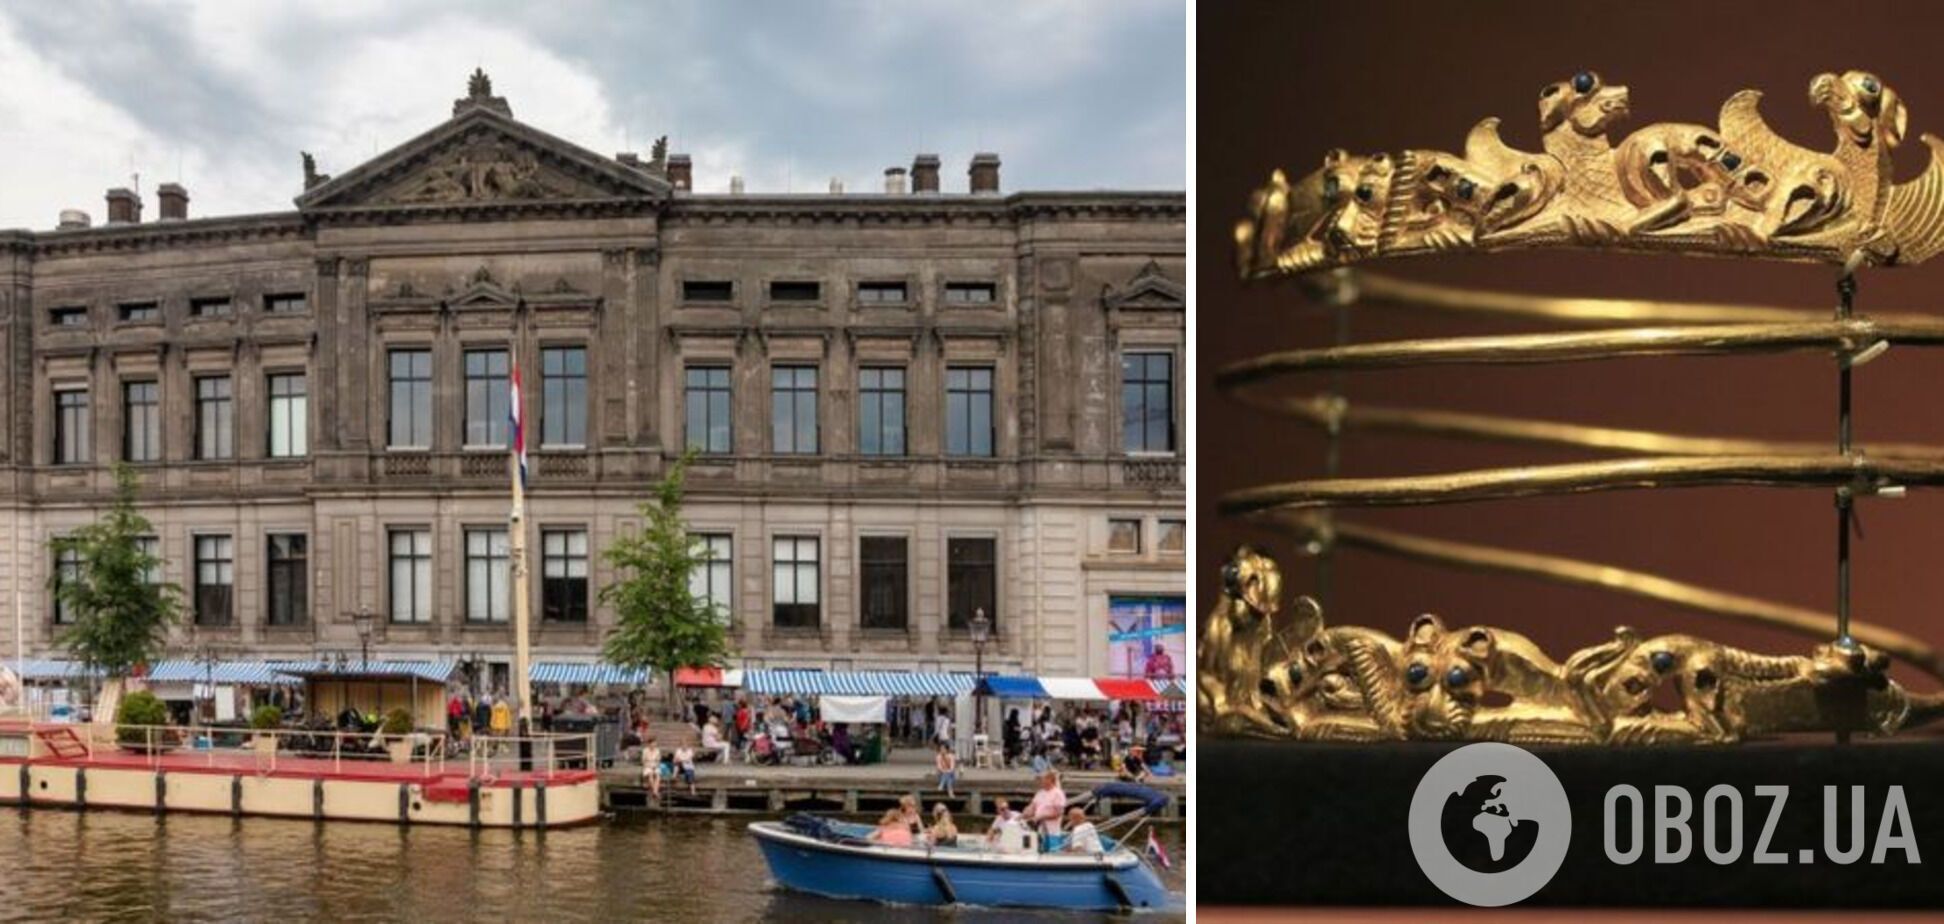 Украинское "скифское золото" сохранялось в амстердамский музее Алларда Пирсона